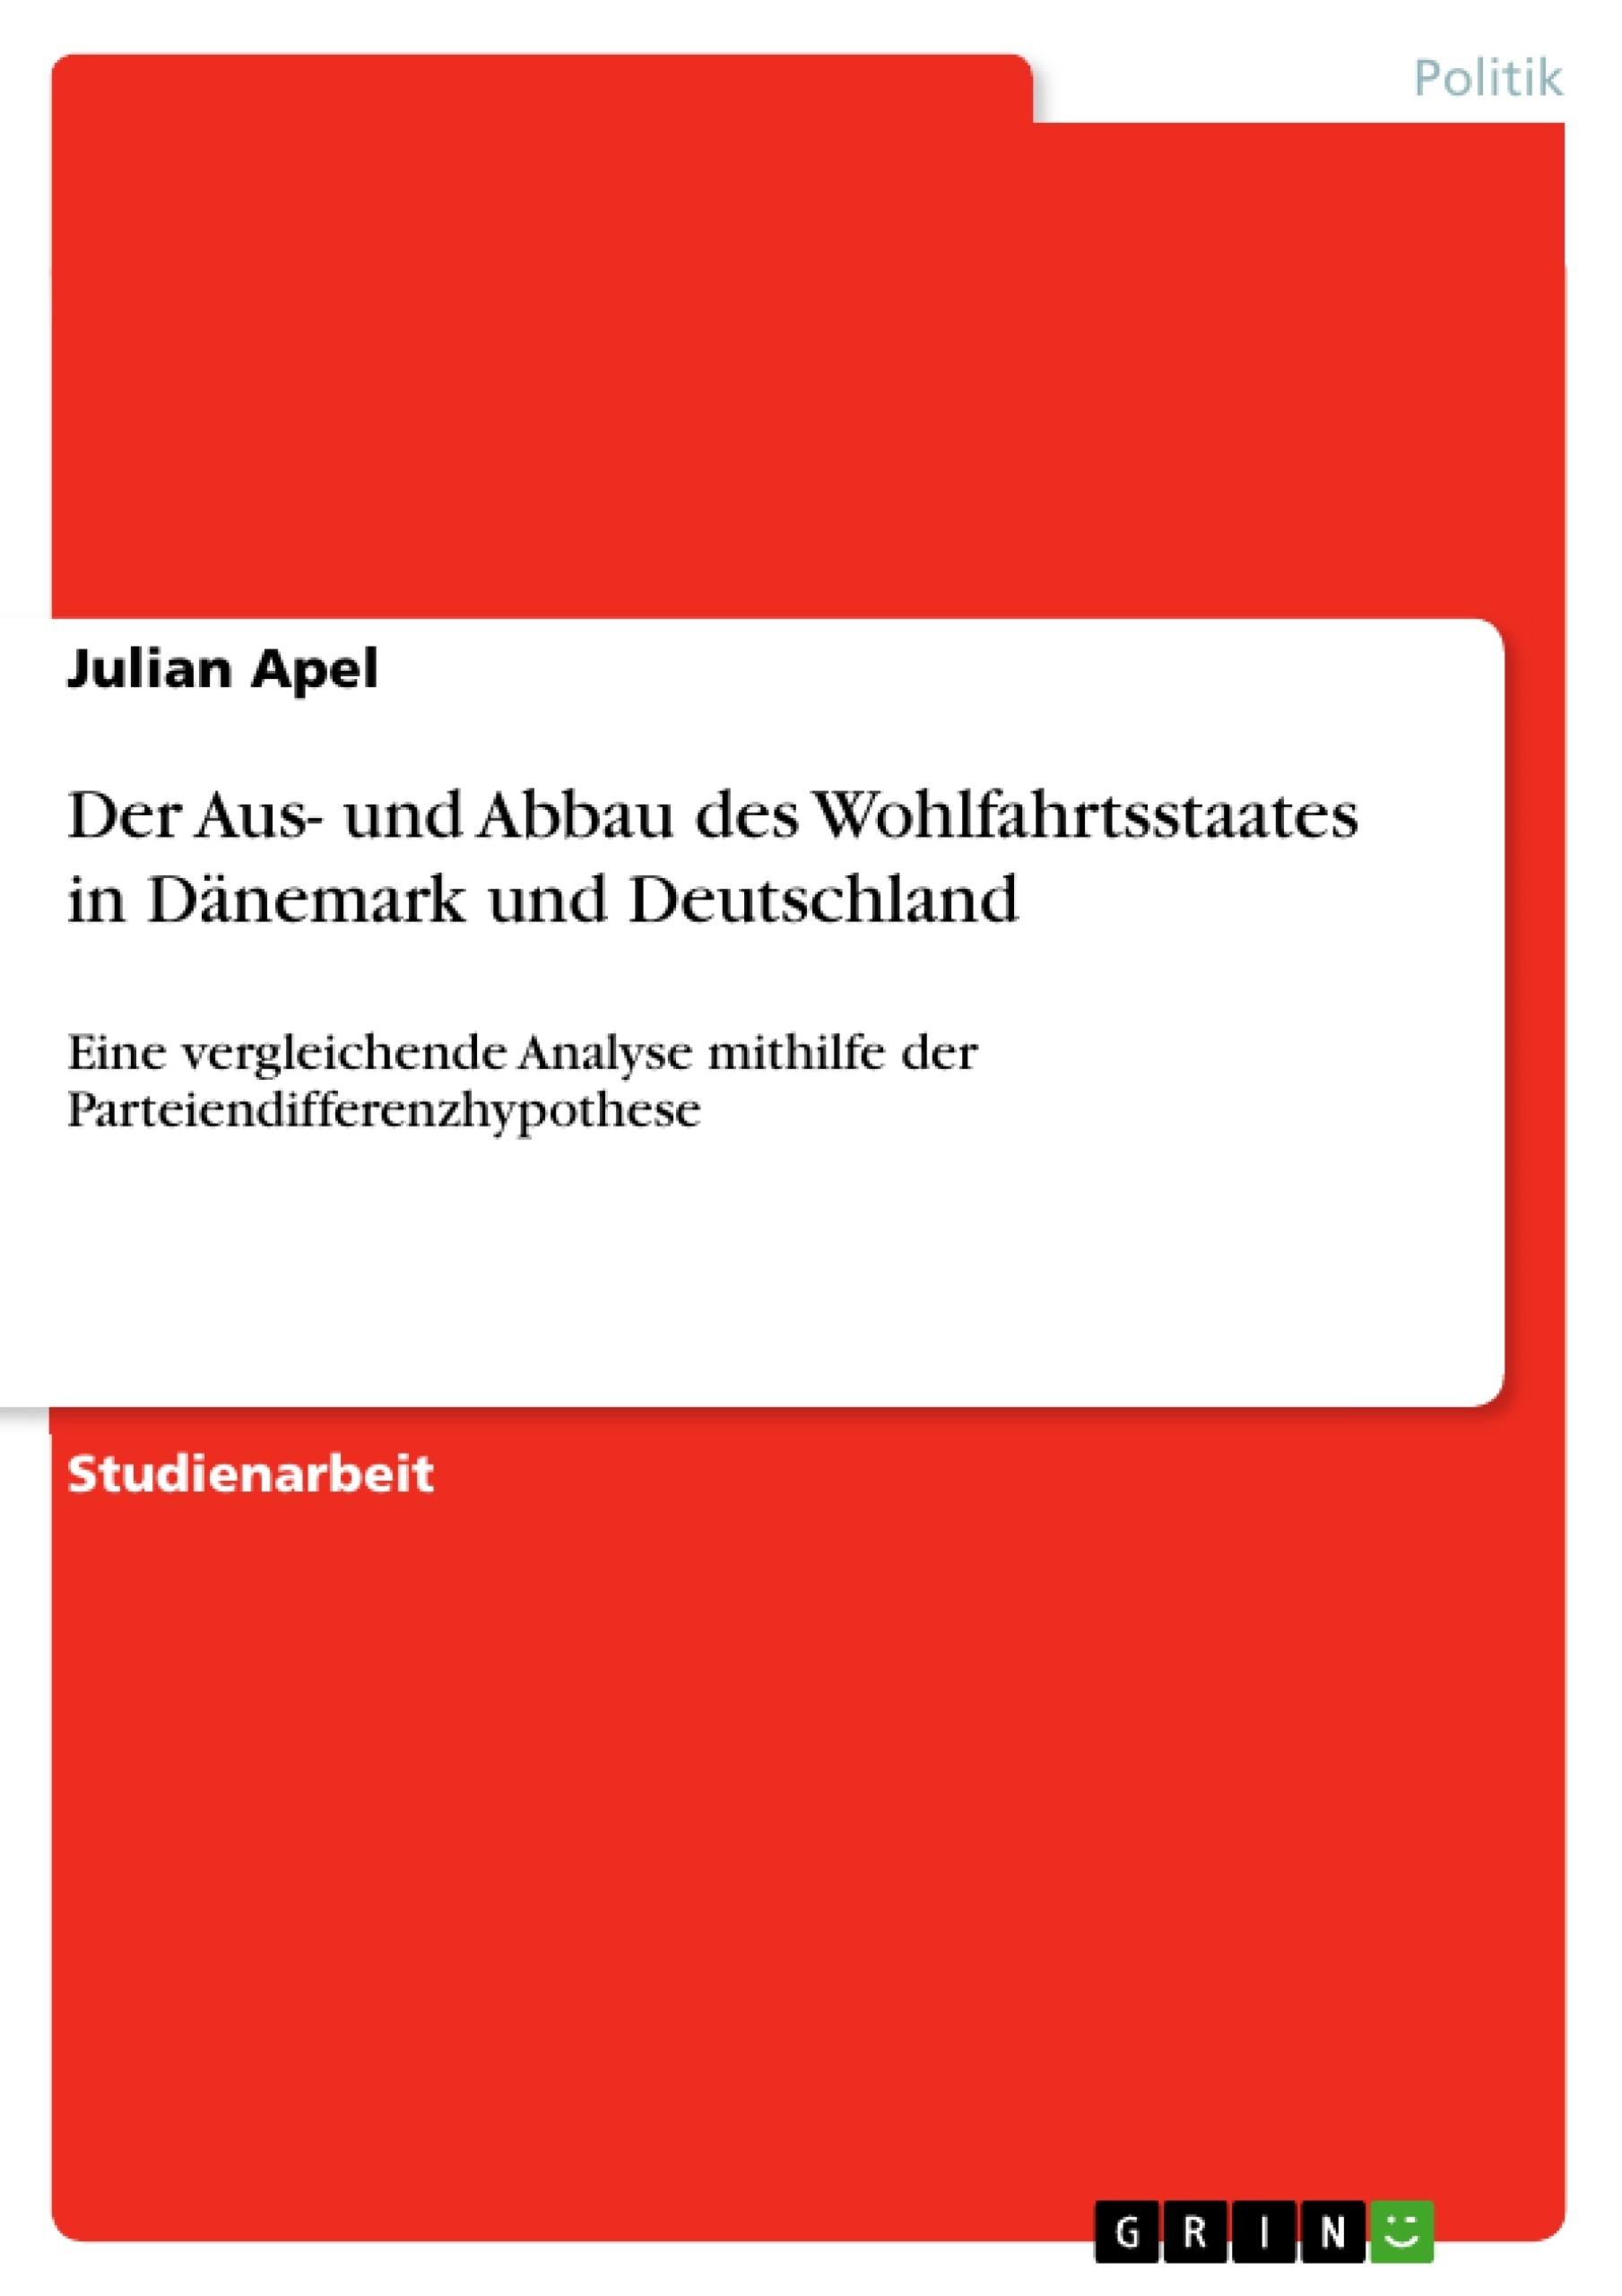 Title: Der Aus- und Abbau des Wohlfahrtsstaates in Dänemark und Deutschland